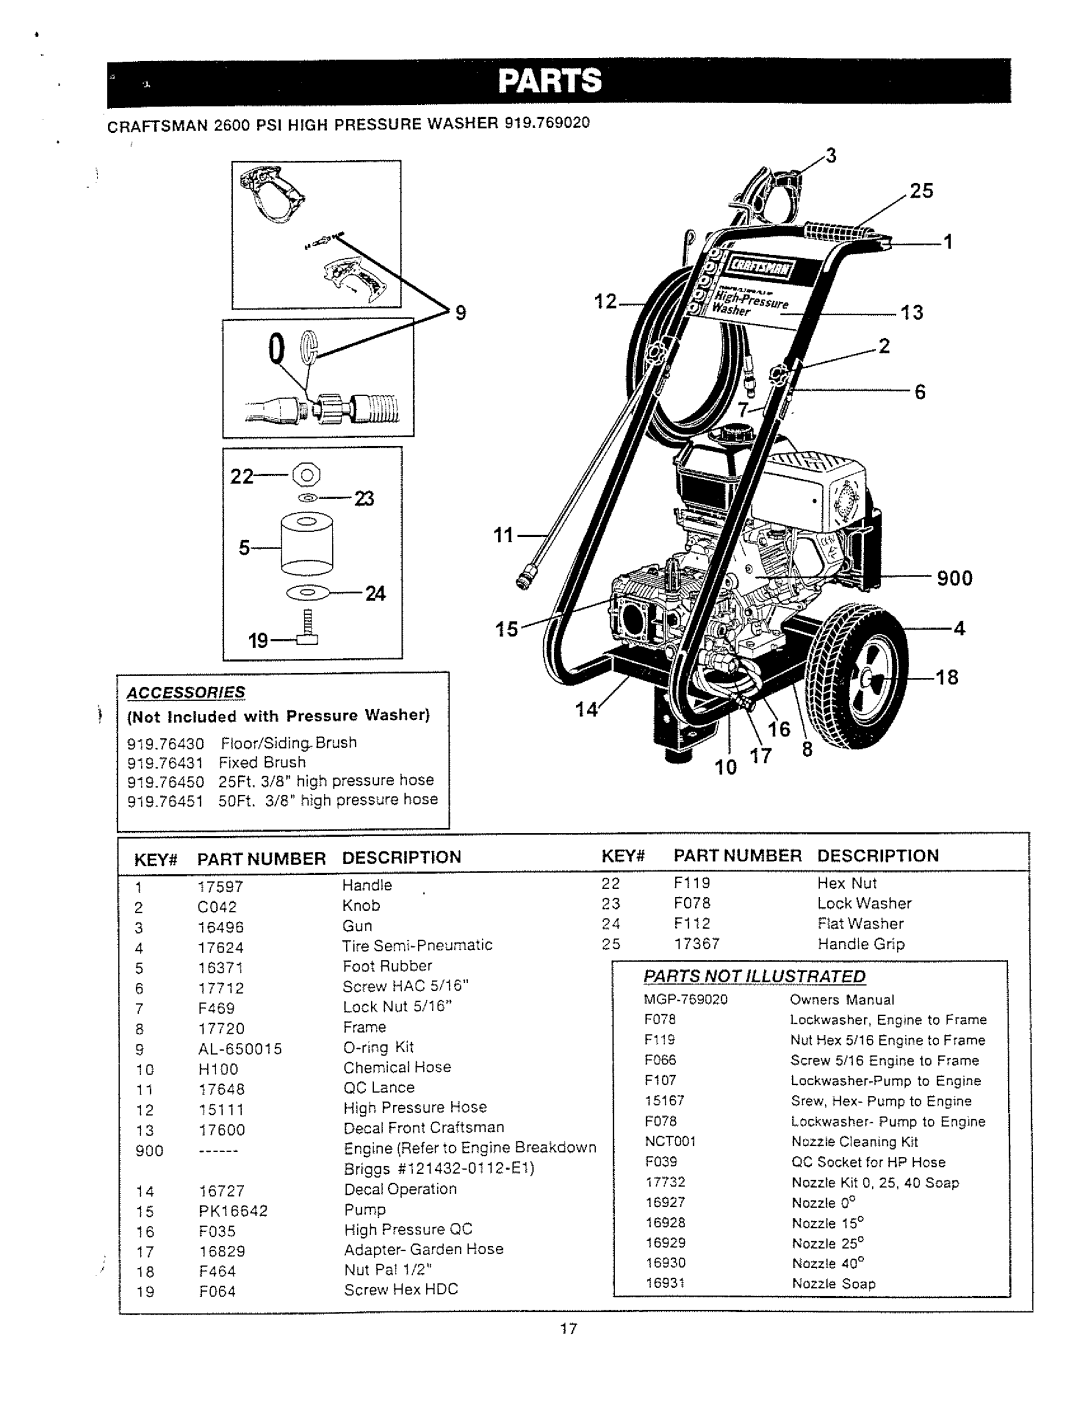 Craftsman MGP-769020, 919.769020 manual 